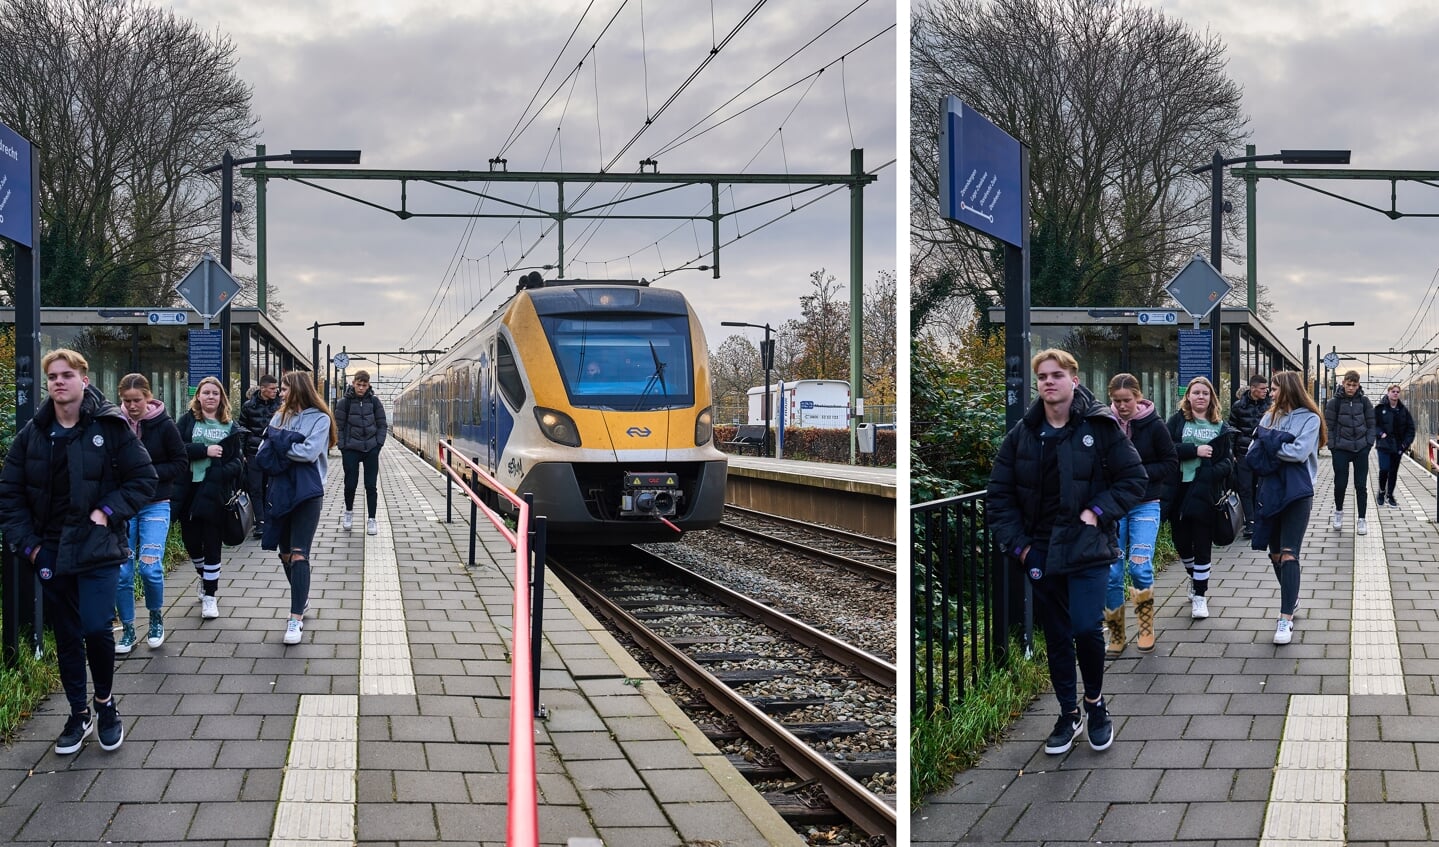 ZEVENBERGEN - Treinreizigers op een station. Het kabinet maakt 7,5 miljard euro vrij voor investeringen in infrastructuur, die vooral naar het spoor gaan. Het grootste gedeelte van dit geld komt terecht in de Randstad en Noord-Brabant. ANP PHIL NIJHUIS